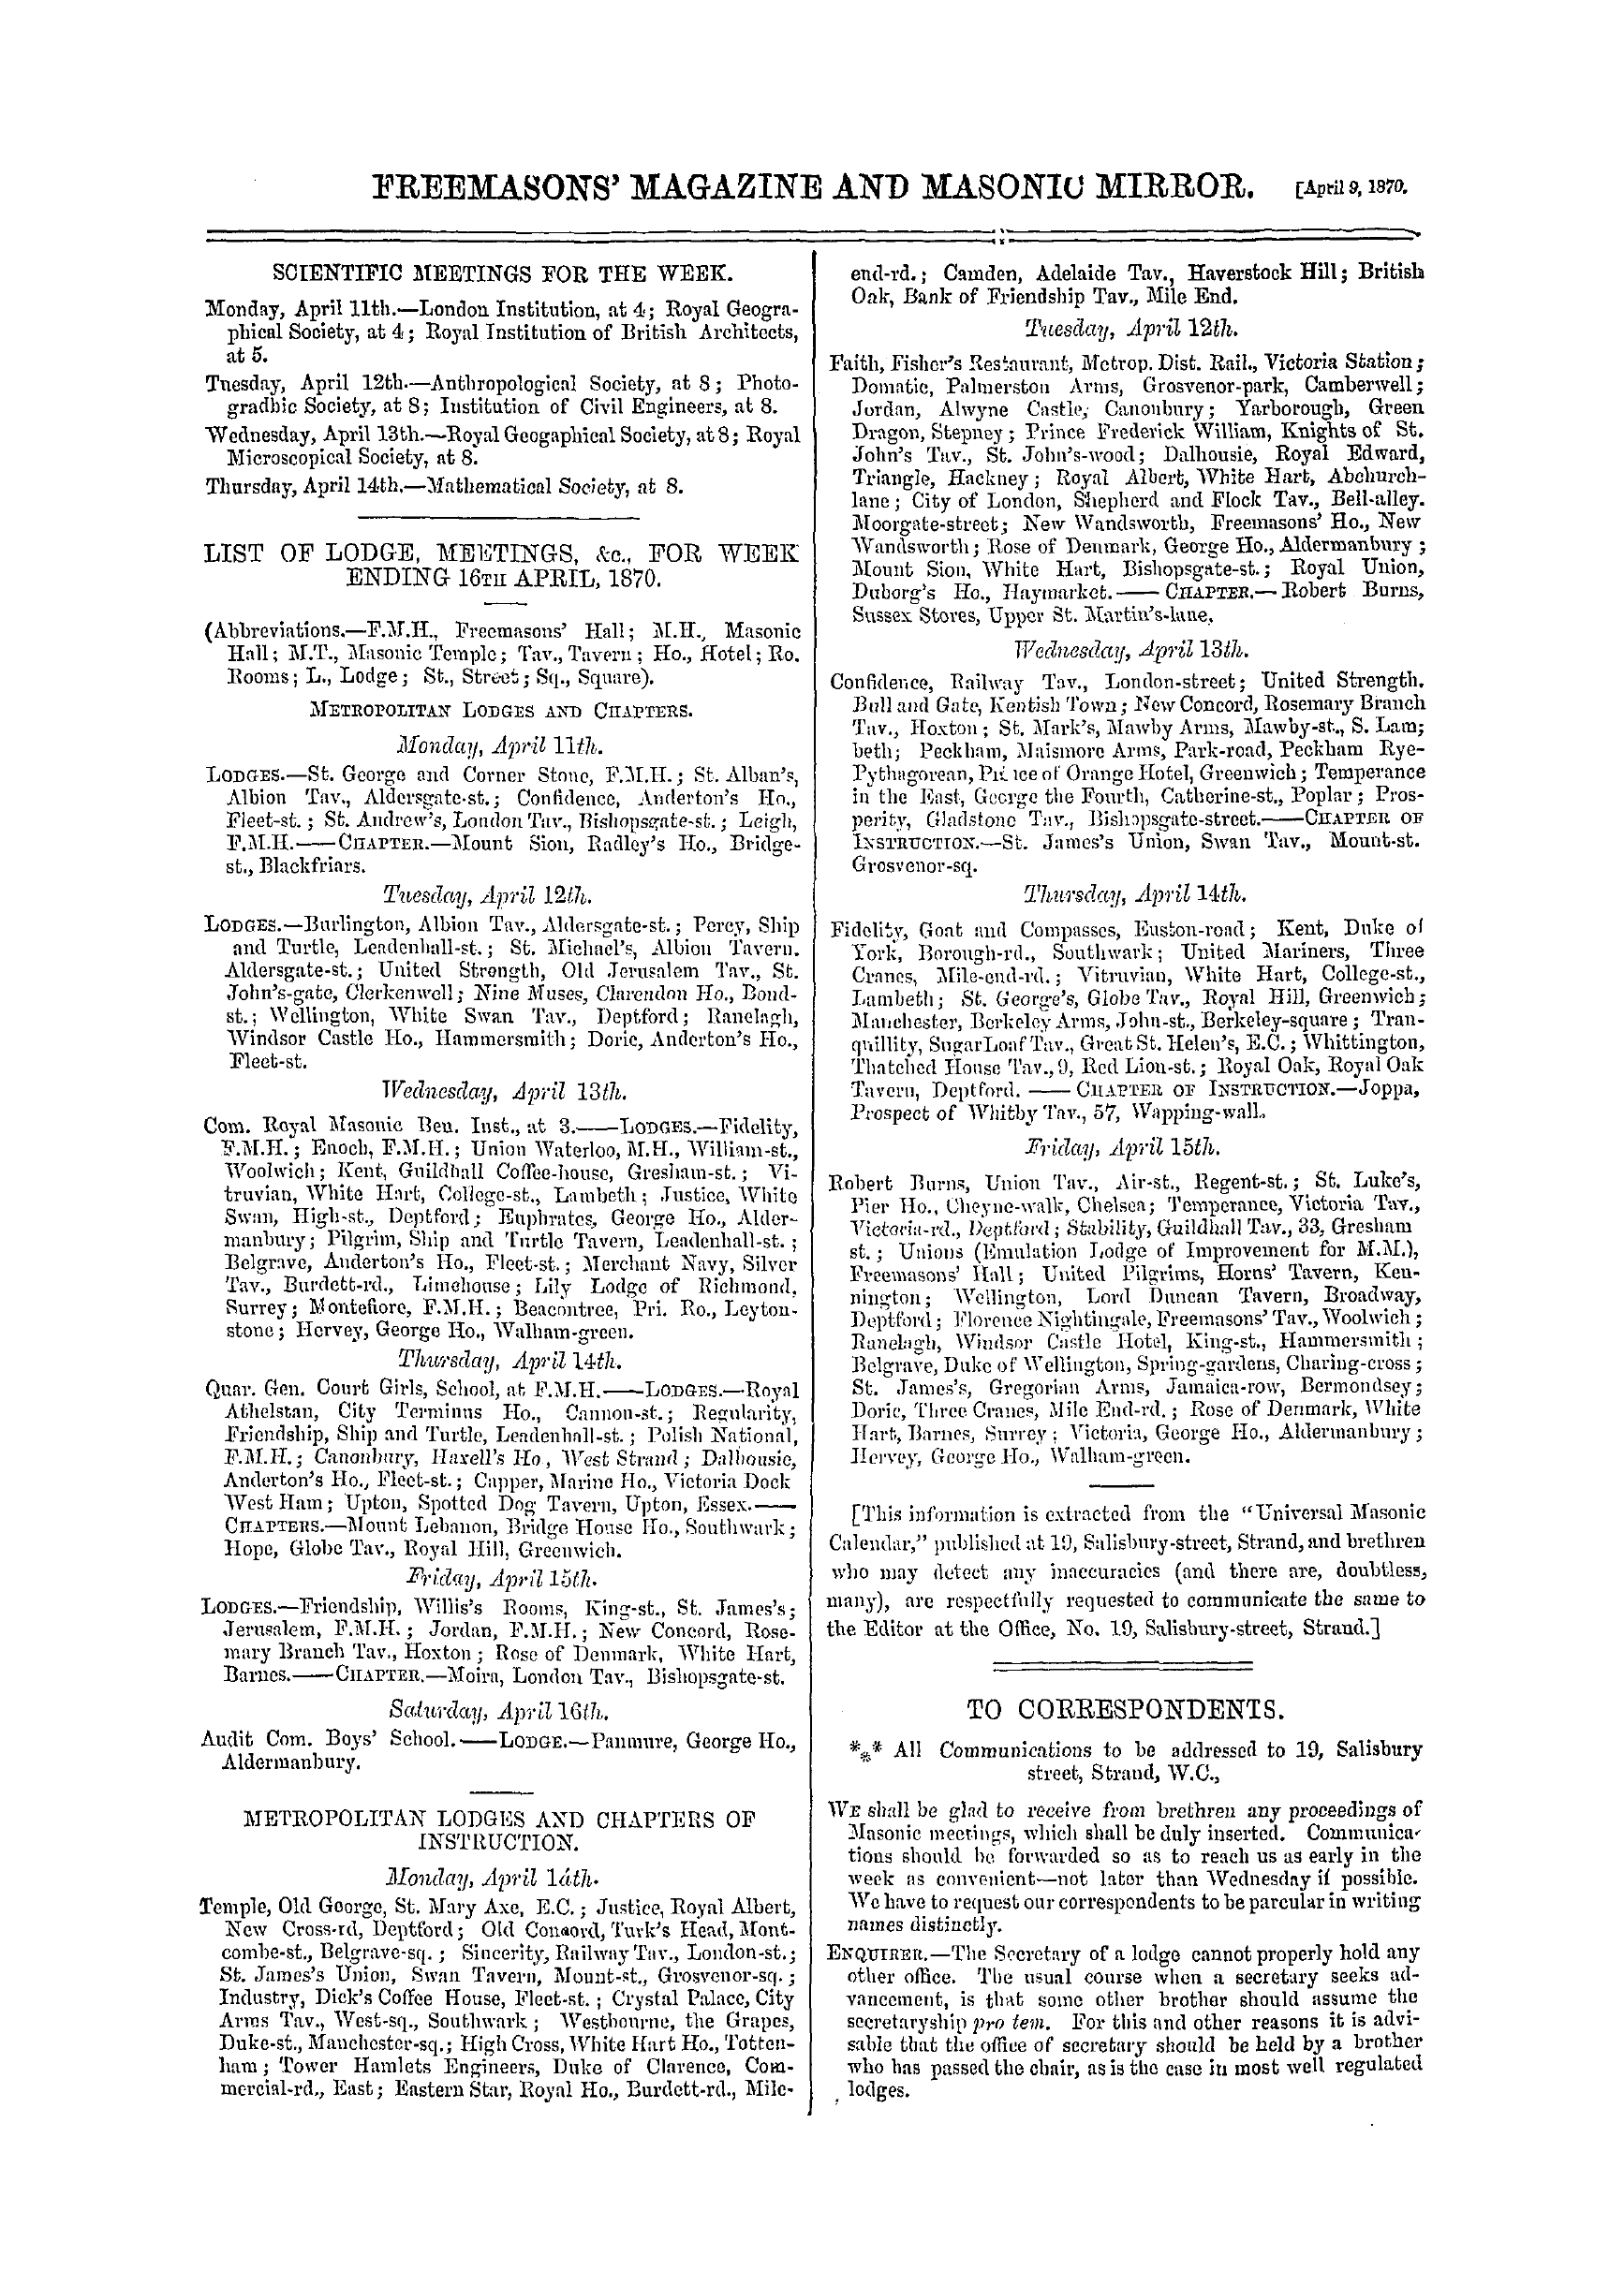 The Freemasons' Monthly Magazine: 1870-04-09 - To Correspondents.